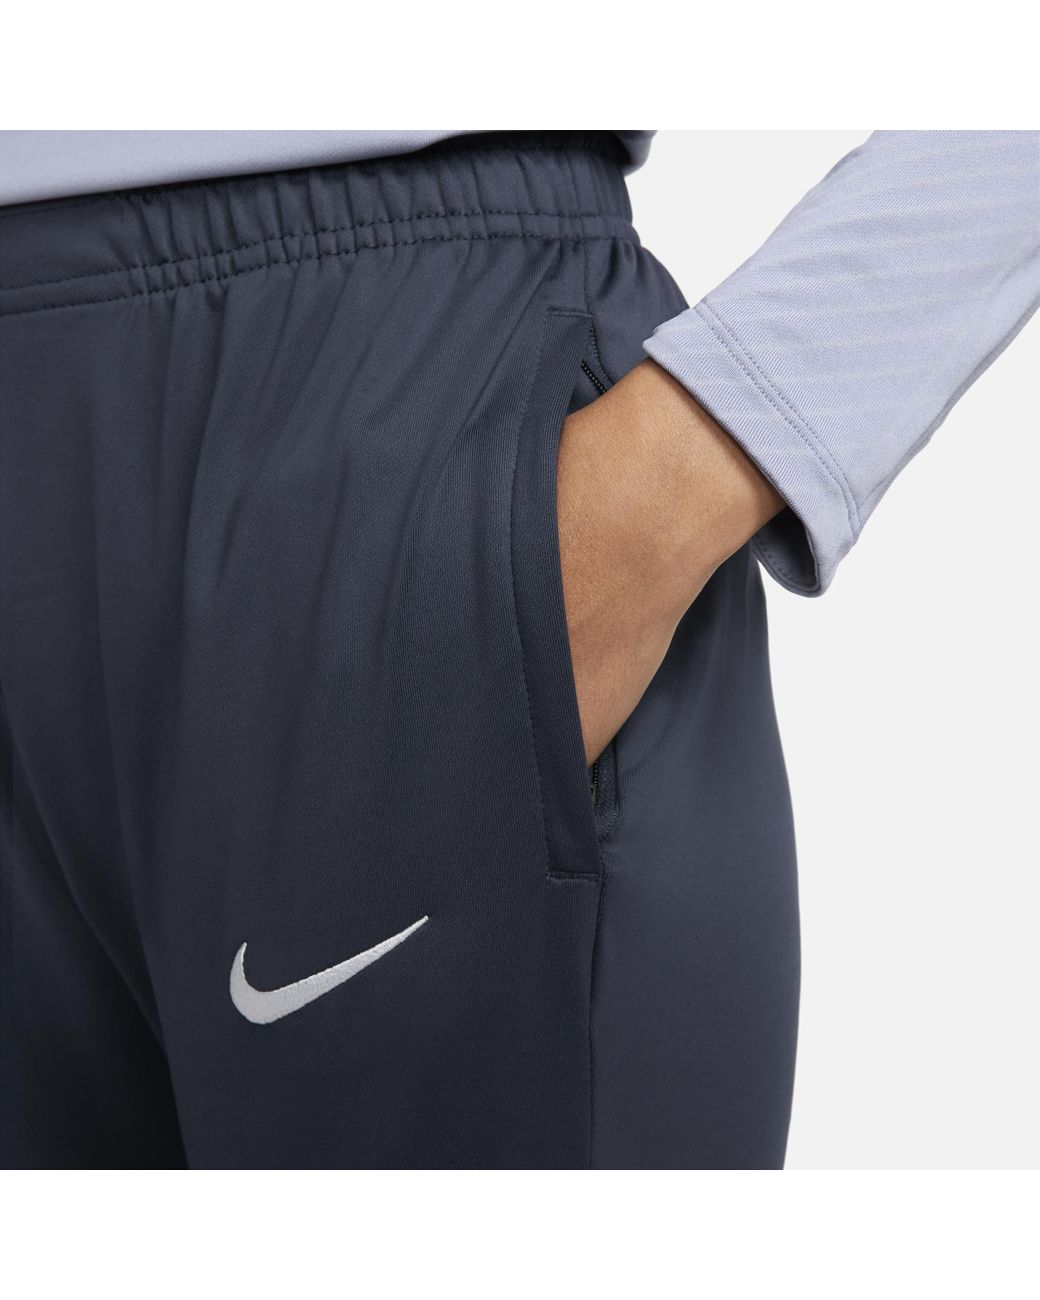 Tottenham Hotspur Strike Men's Nike Dri-FIT Soccer Track Pants.